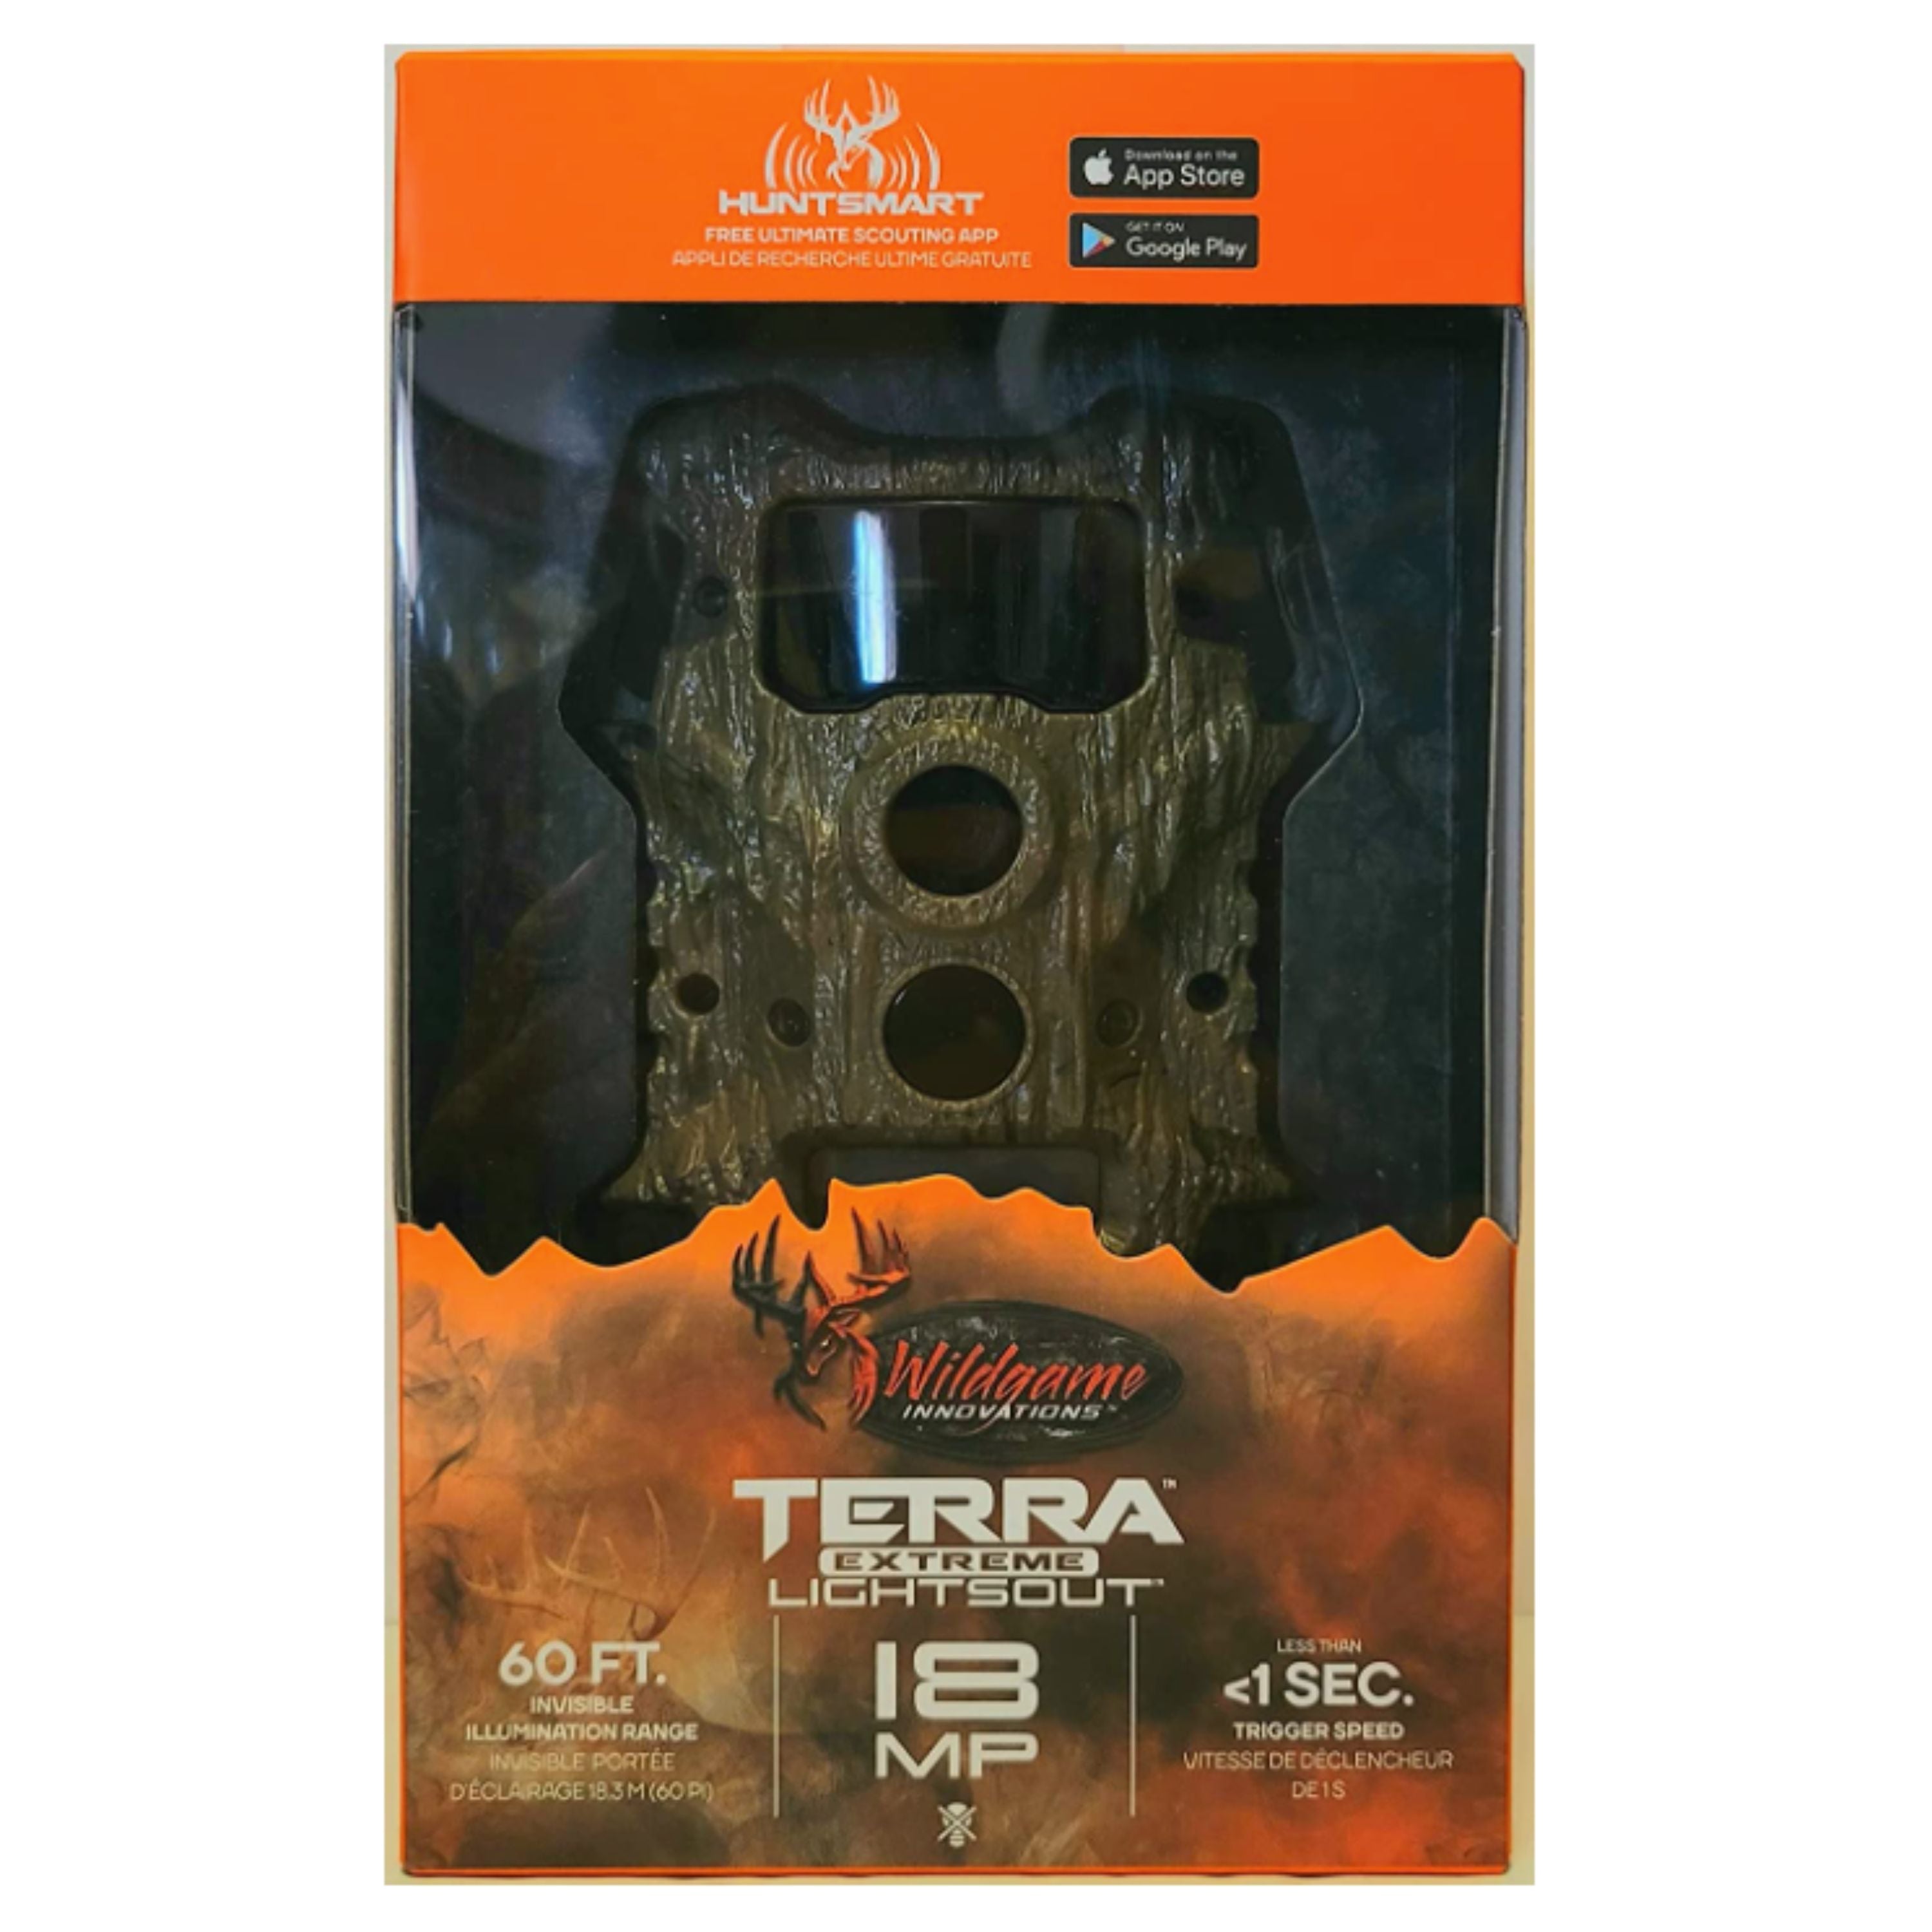 Caméra "Terra Extreme 18 Lightsout"